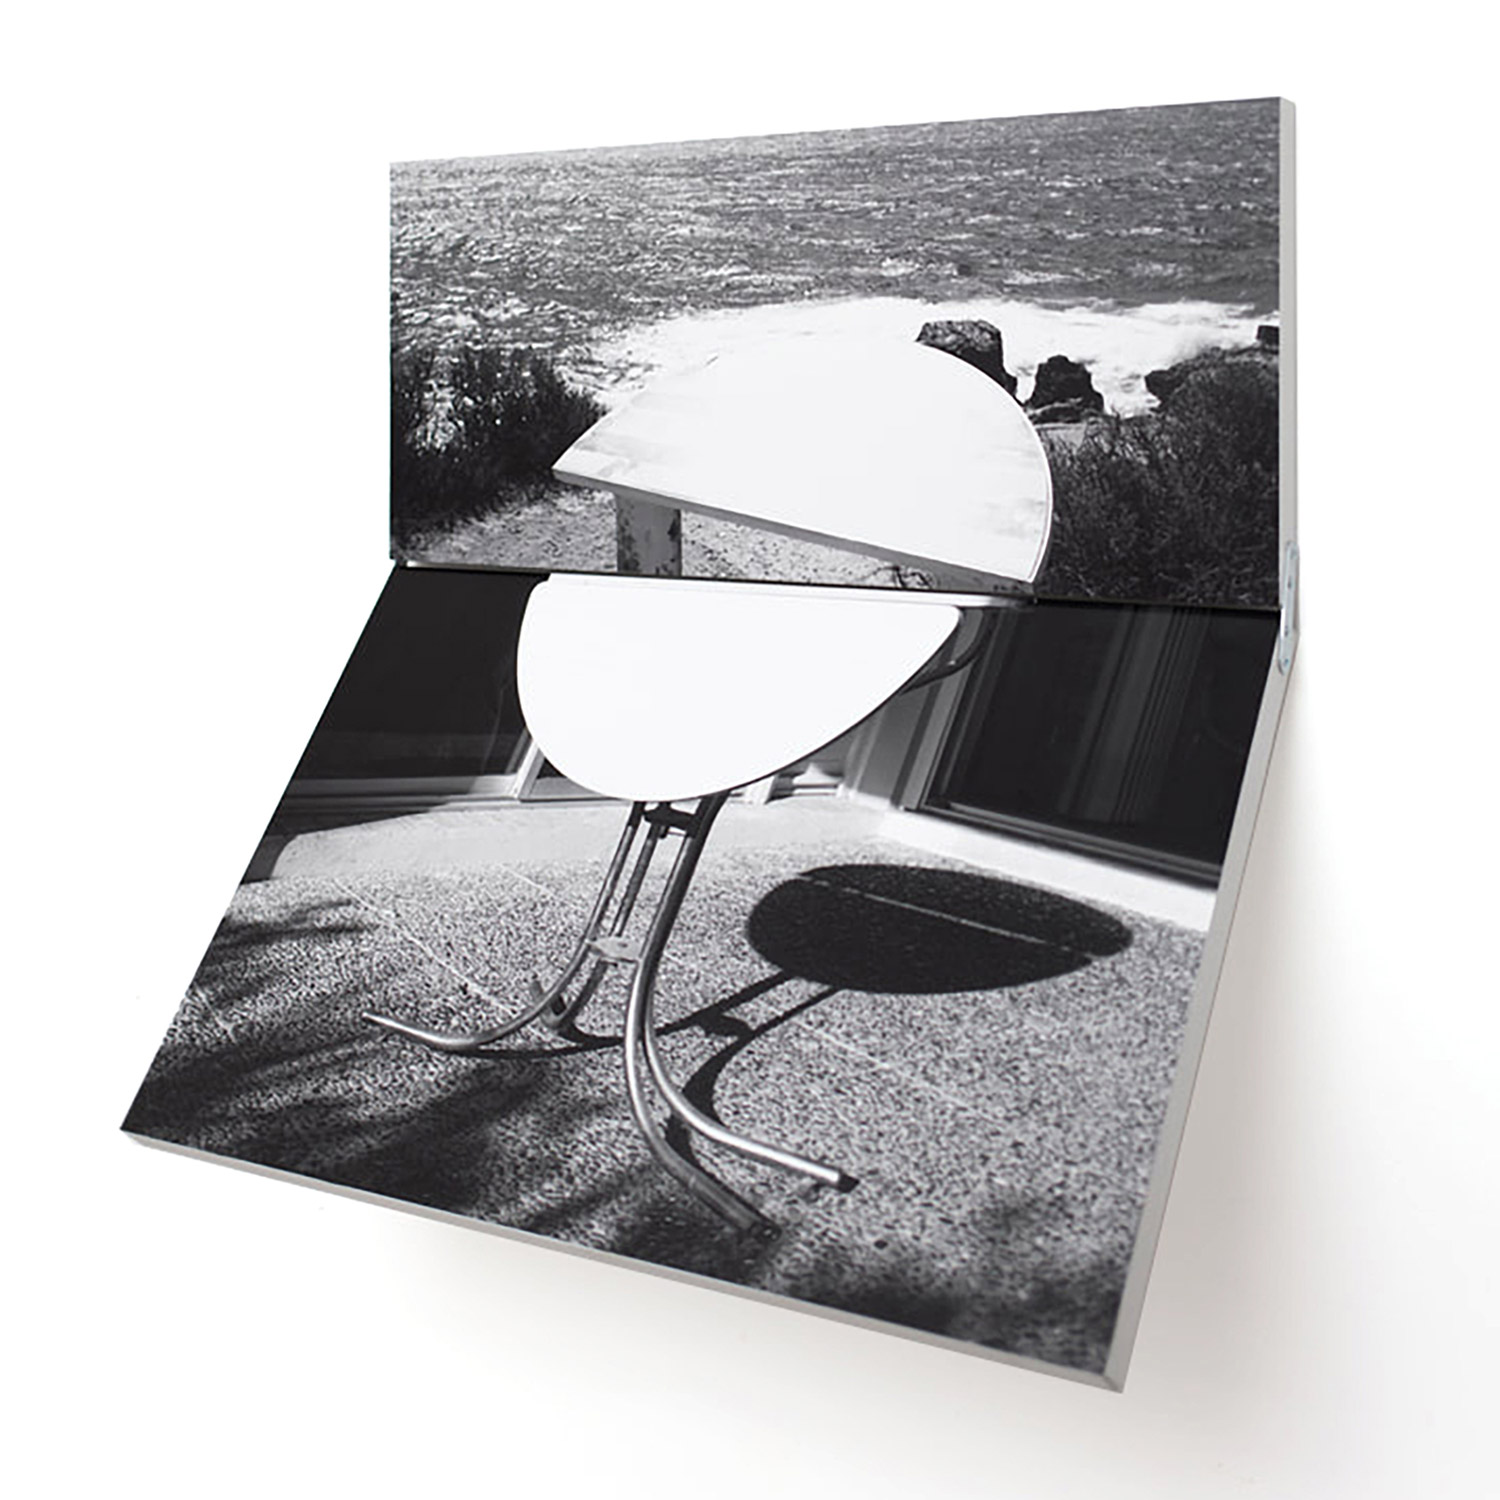 Mathilde Geldhof - La deuxième table, 2020 tirages lambda, bois, charnières, 69,3 cm X 75,3 cm - © ADAGP